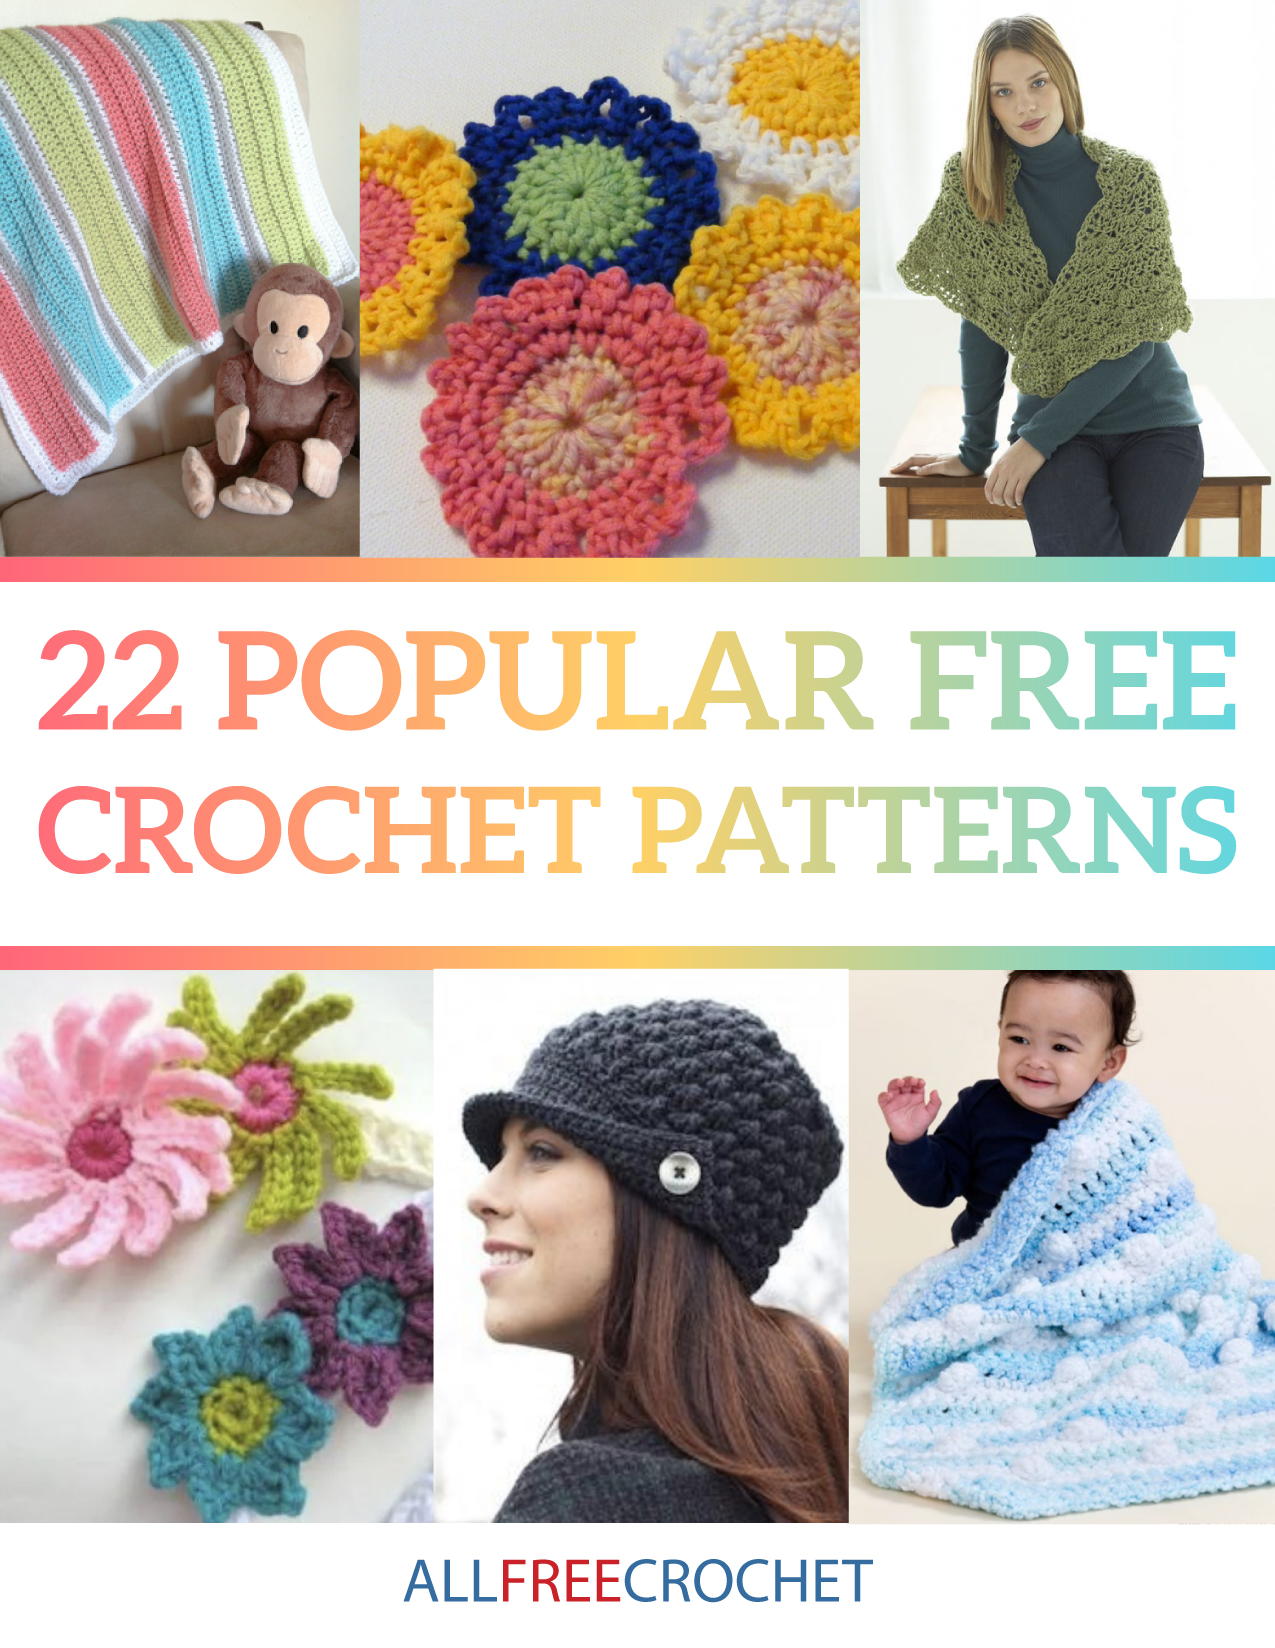 9 Popular Free Crochet Patterns eBook   AllFreeCrochet.com